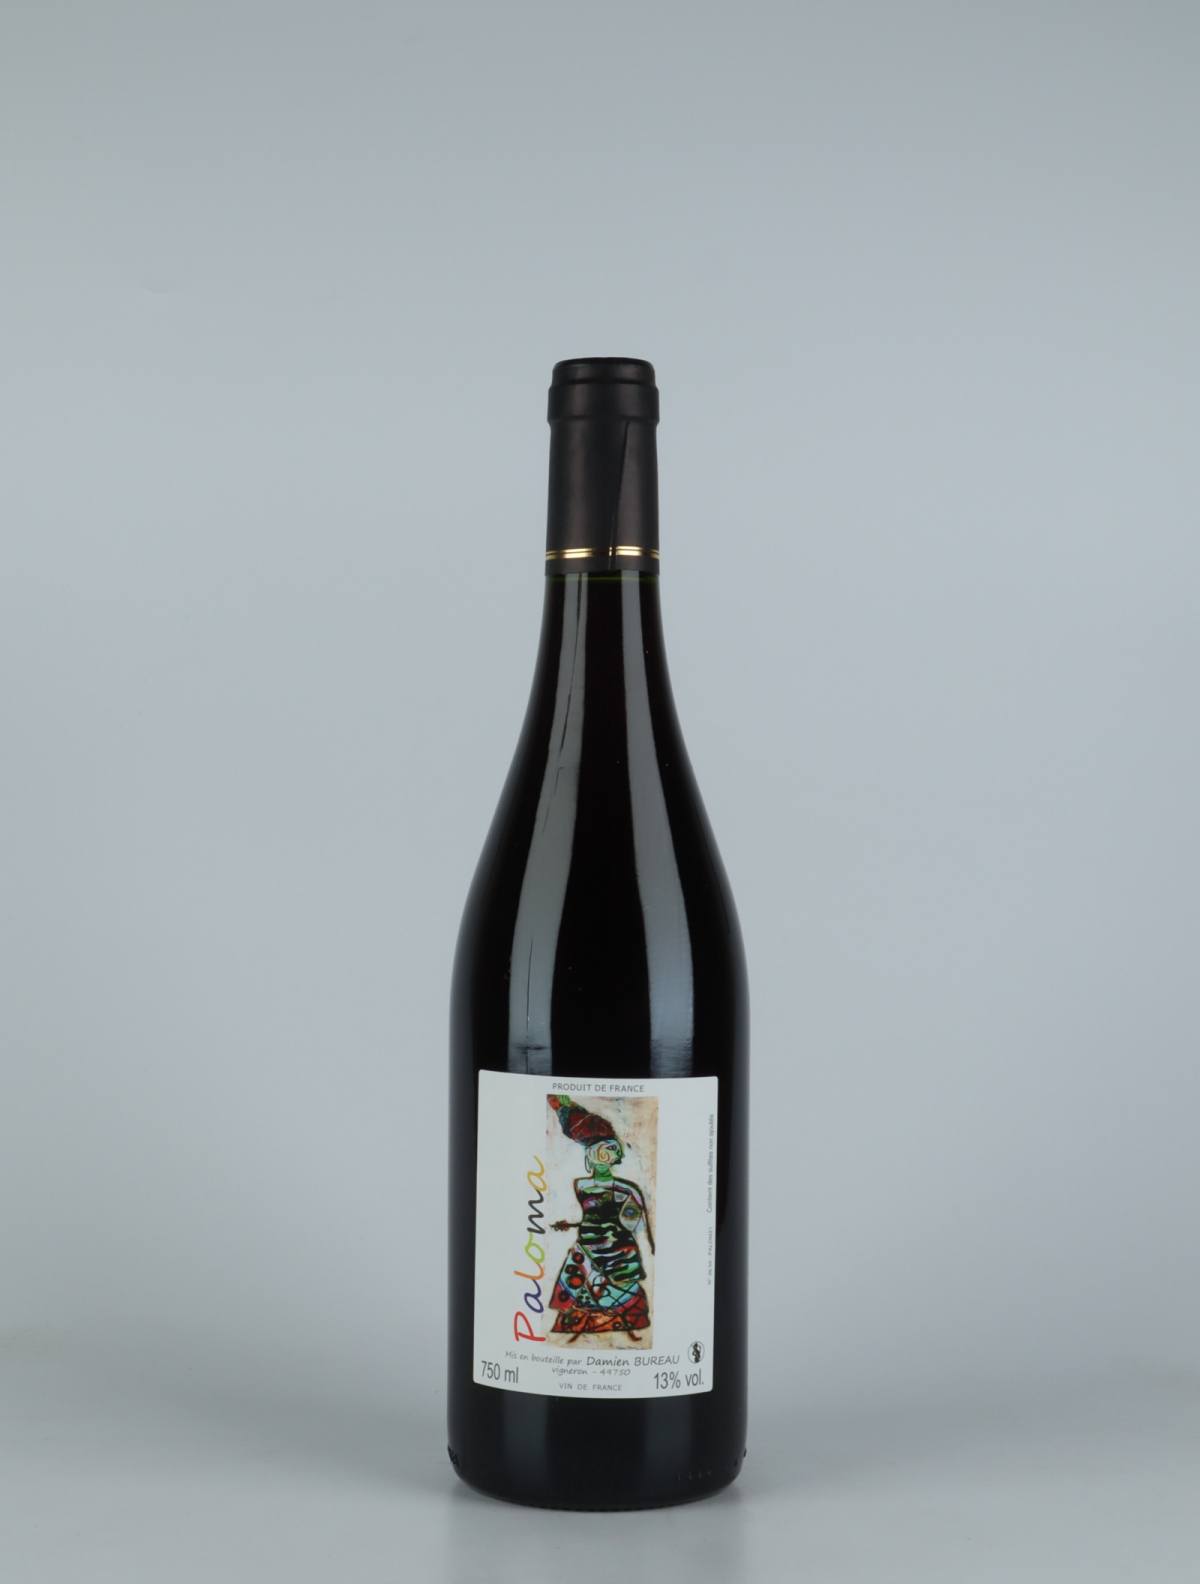 A bottle 2021 Paloma Red wine from Damien Bureau, Loire in France